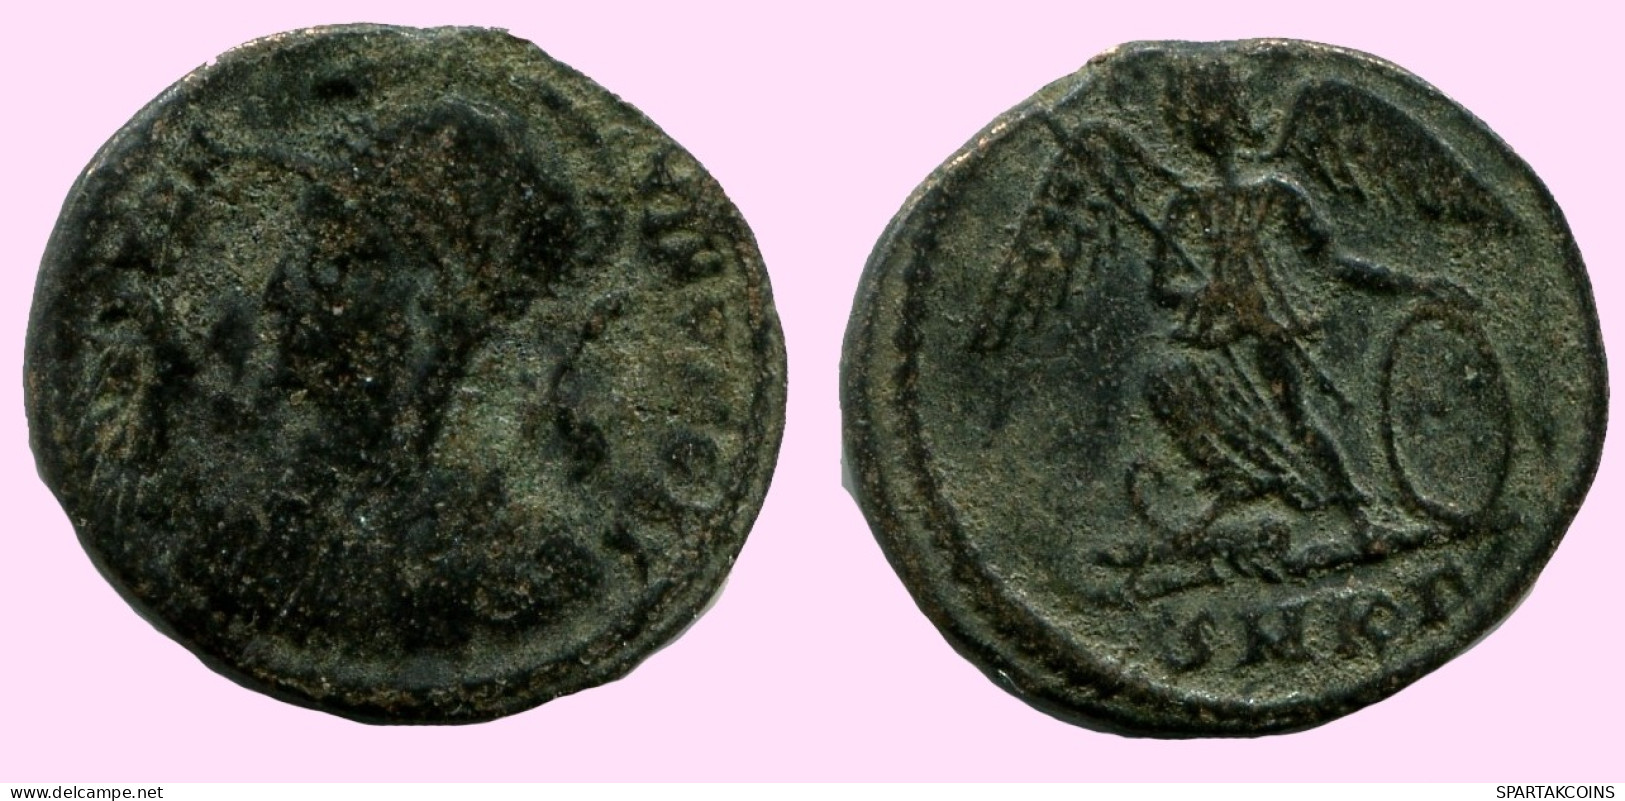 CONSTANTINOPOLIS COMMEMORATIVE ROMAN Bronze Pièce #ANC12245.12.F.A - L'Empire Chrétien (307 à 363)